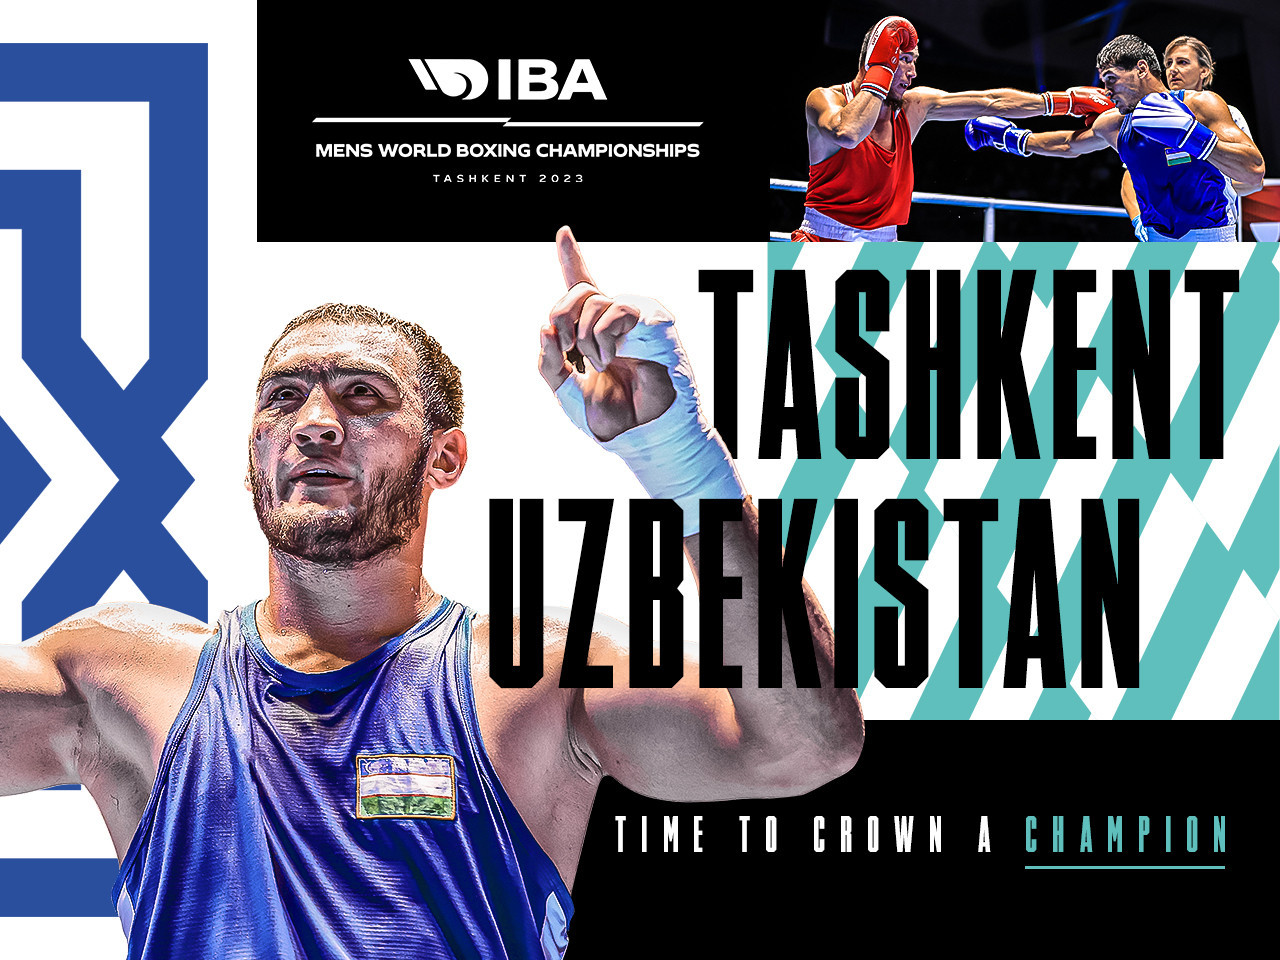 IBA reveals 104 nations registered for Men's World Boxing Championships in Tashkent